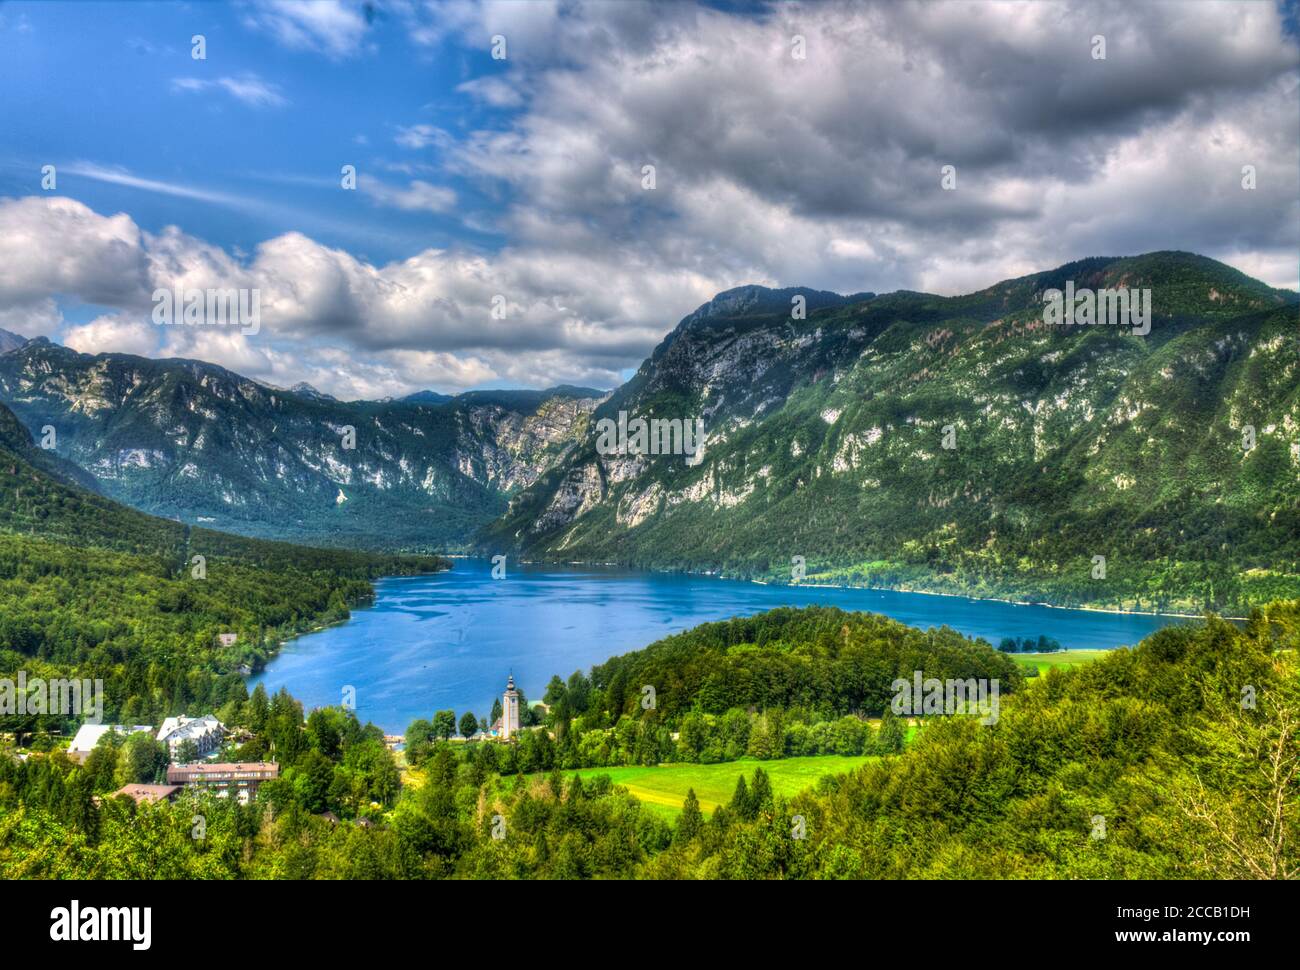 View of Lake Bohinj, Slovenia Stock Photo